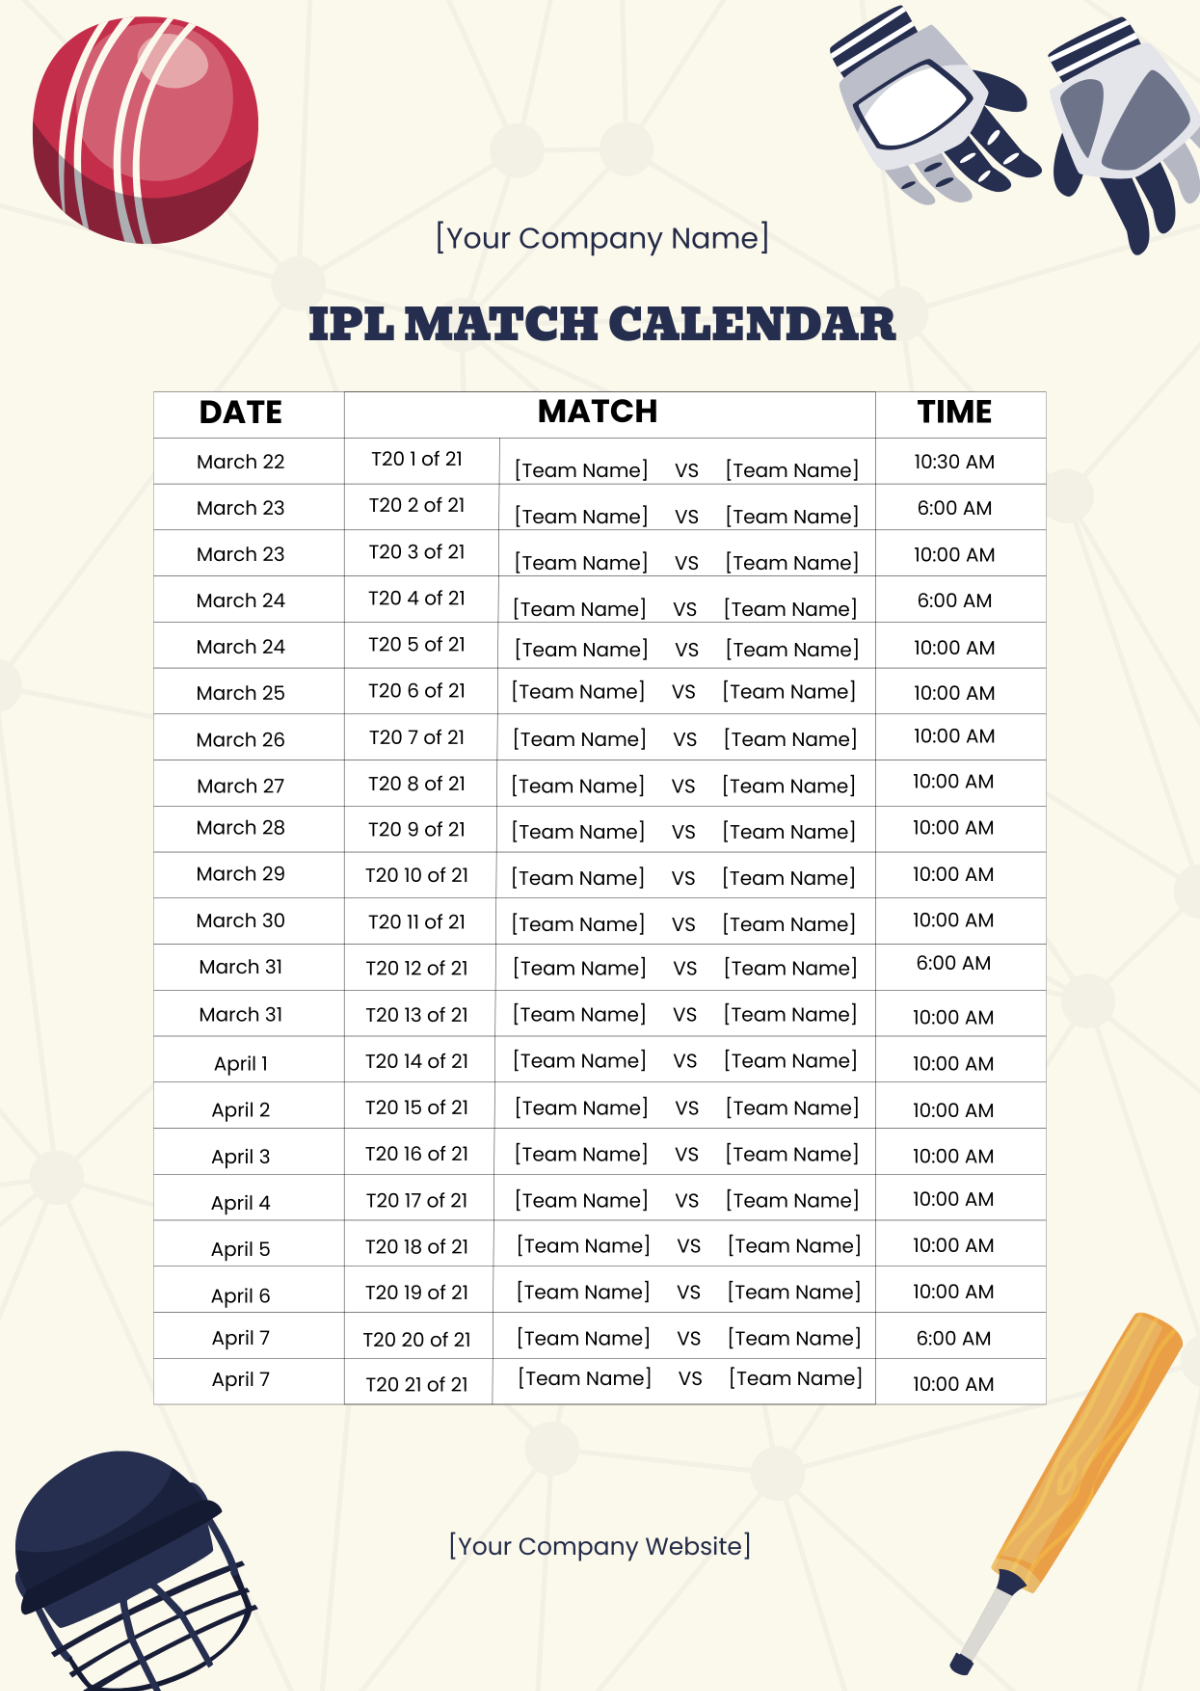 IPL Match Calendar